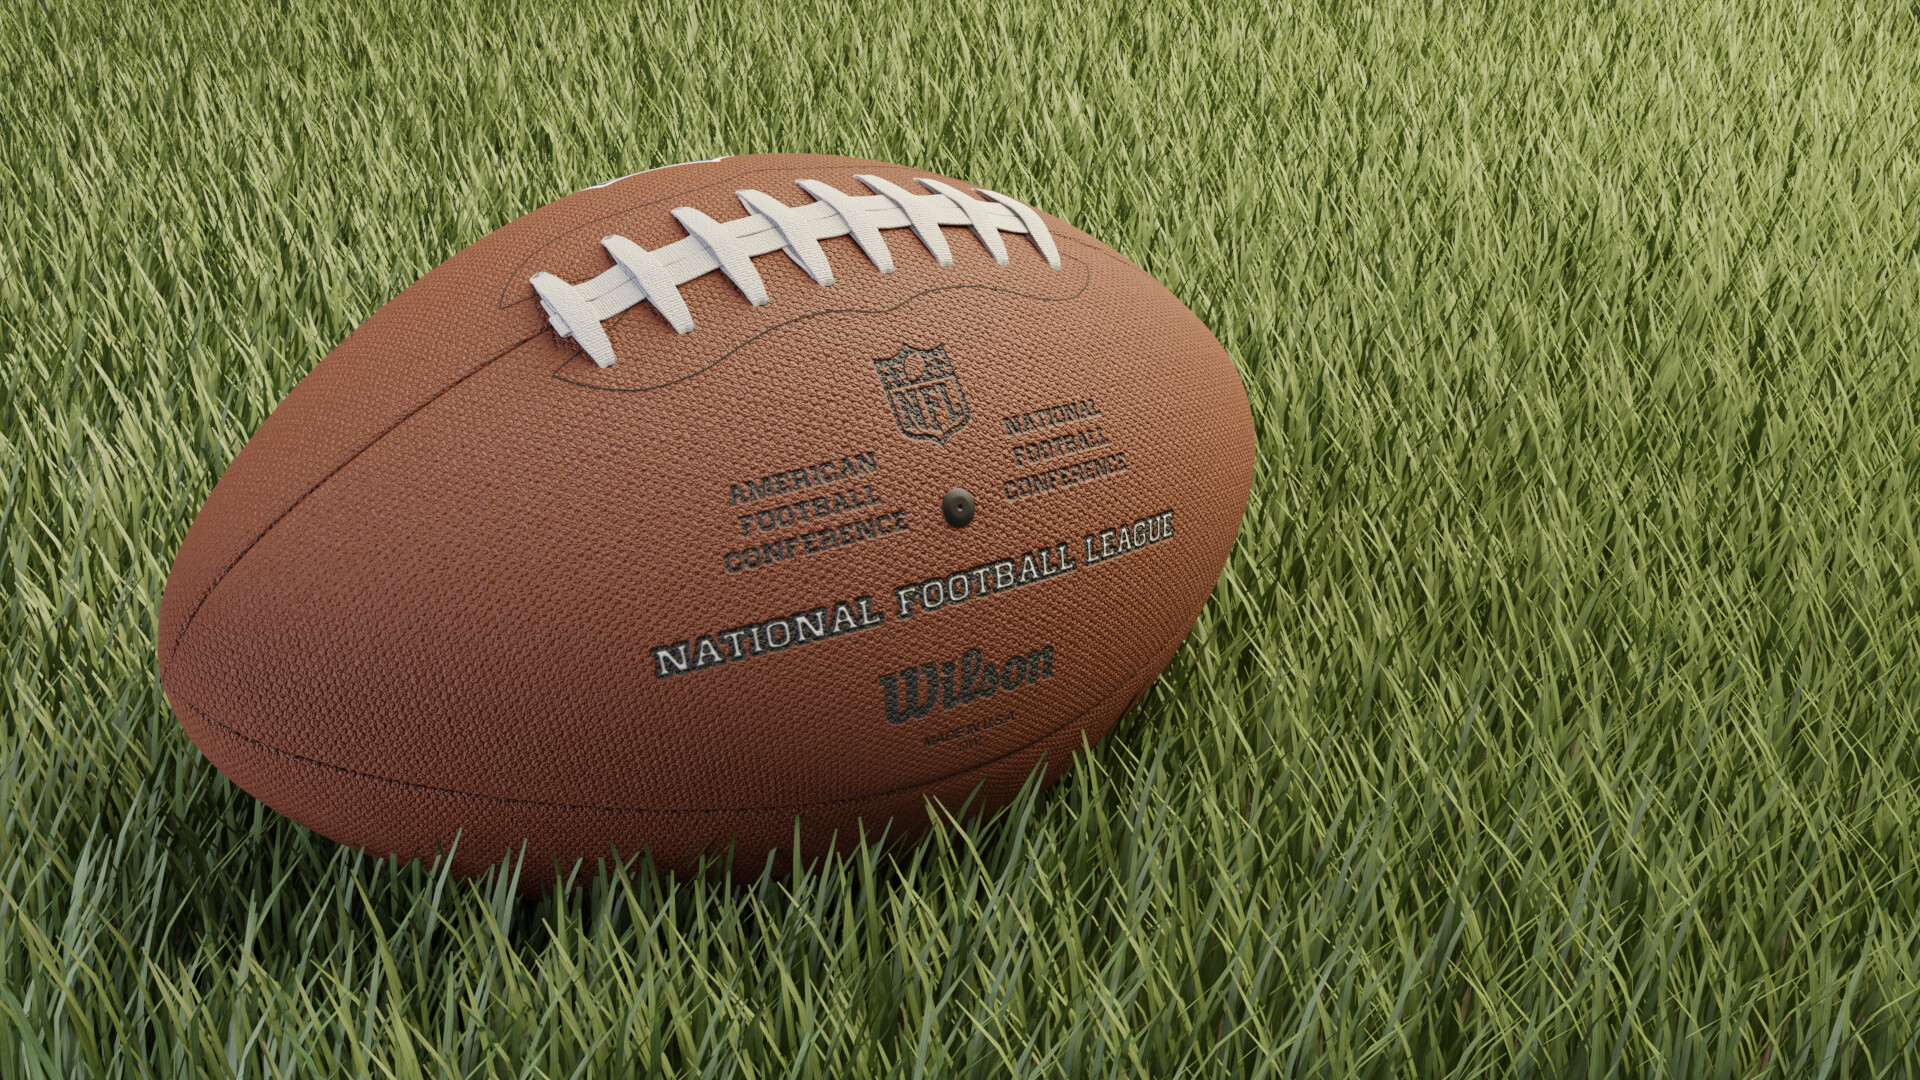 ArtStation - NFL Football Ball